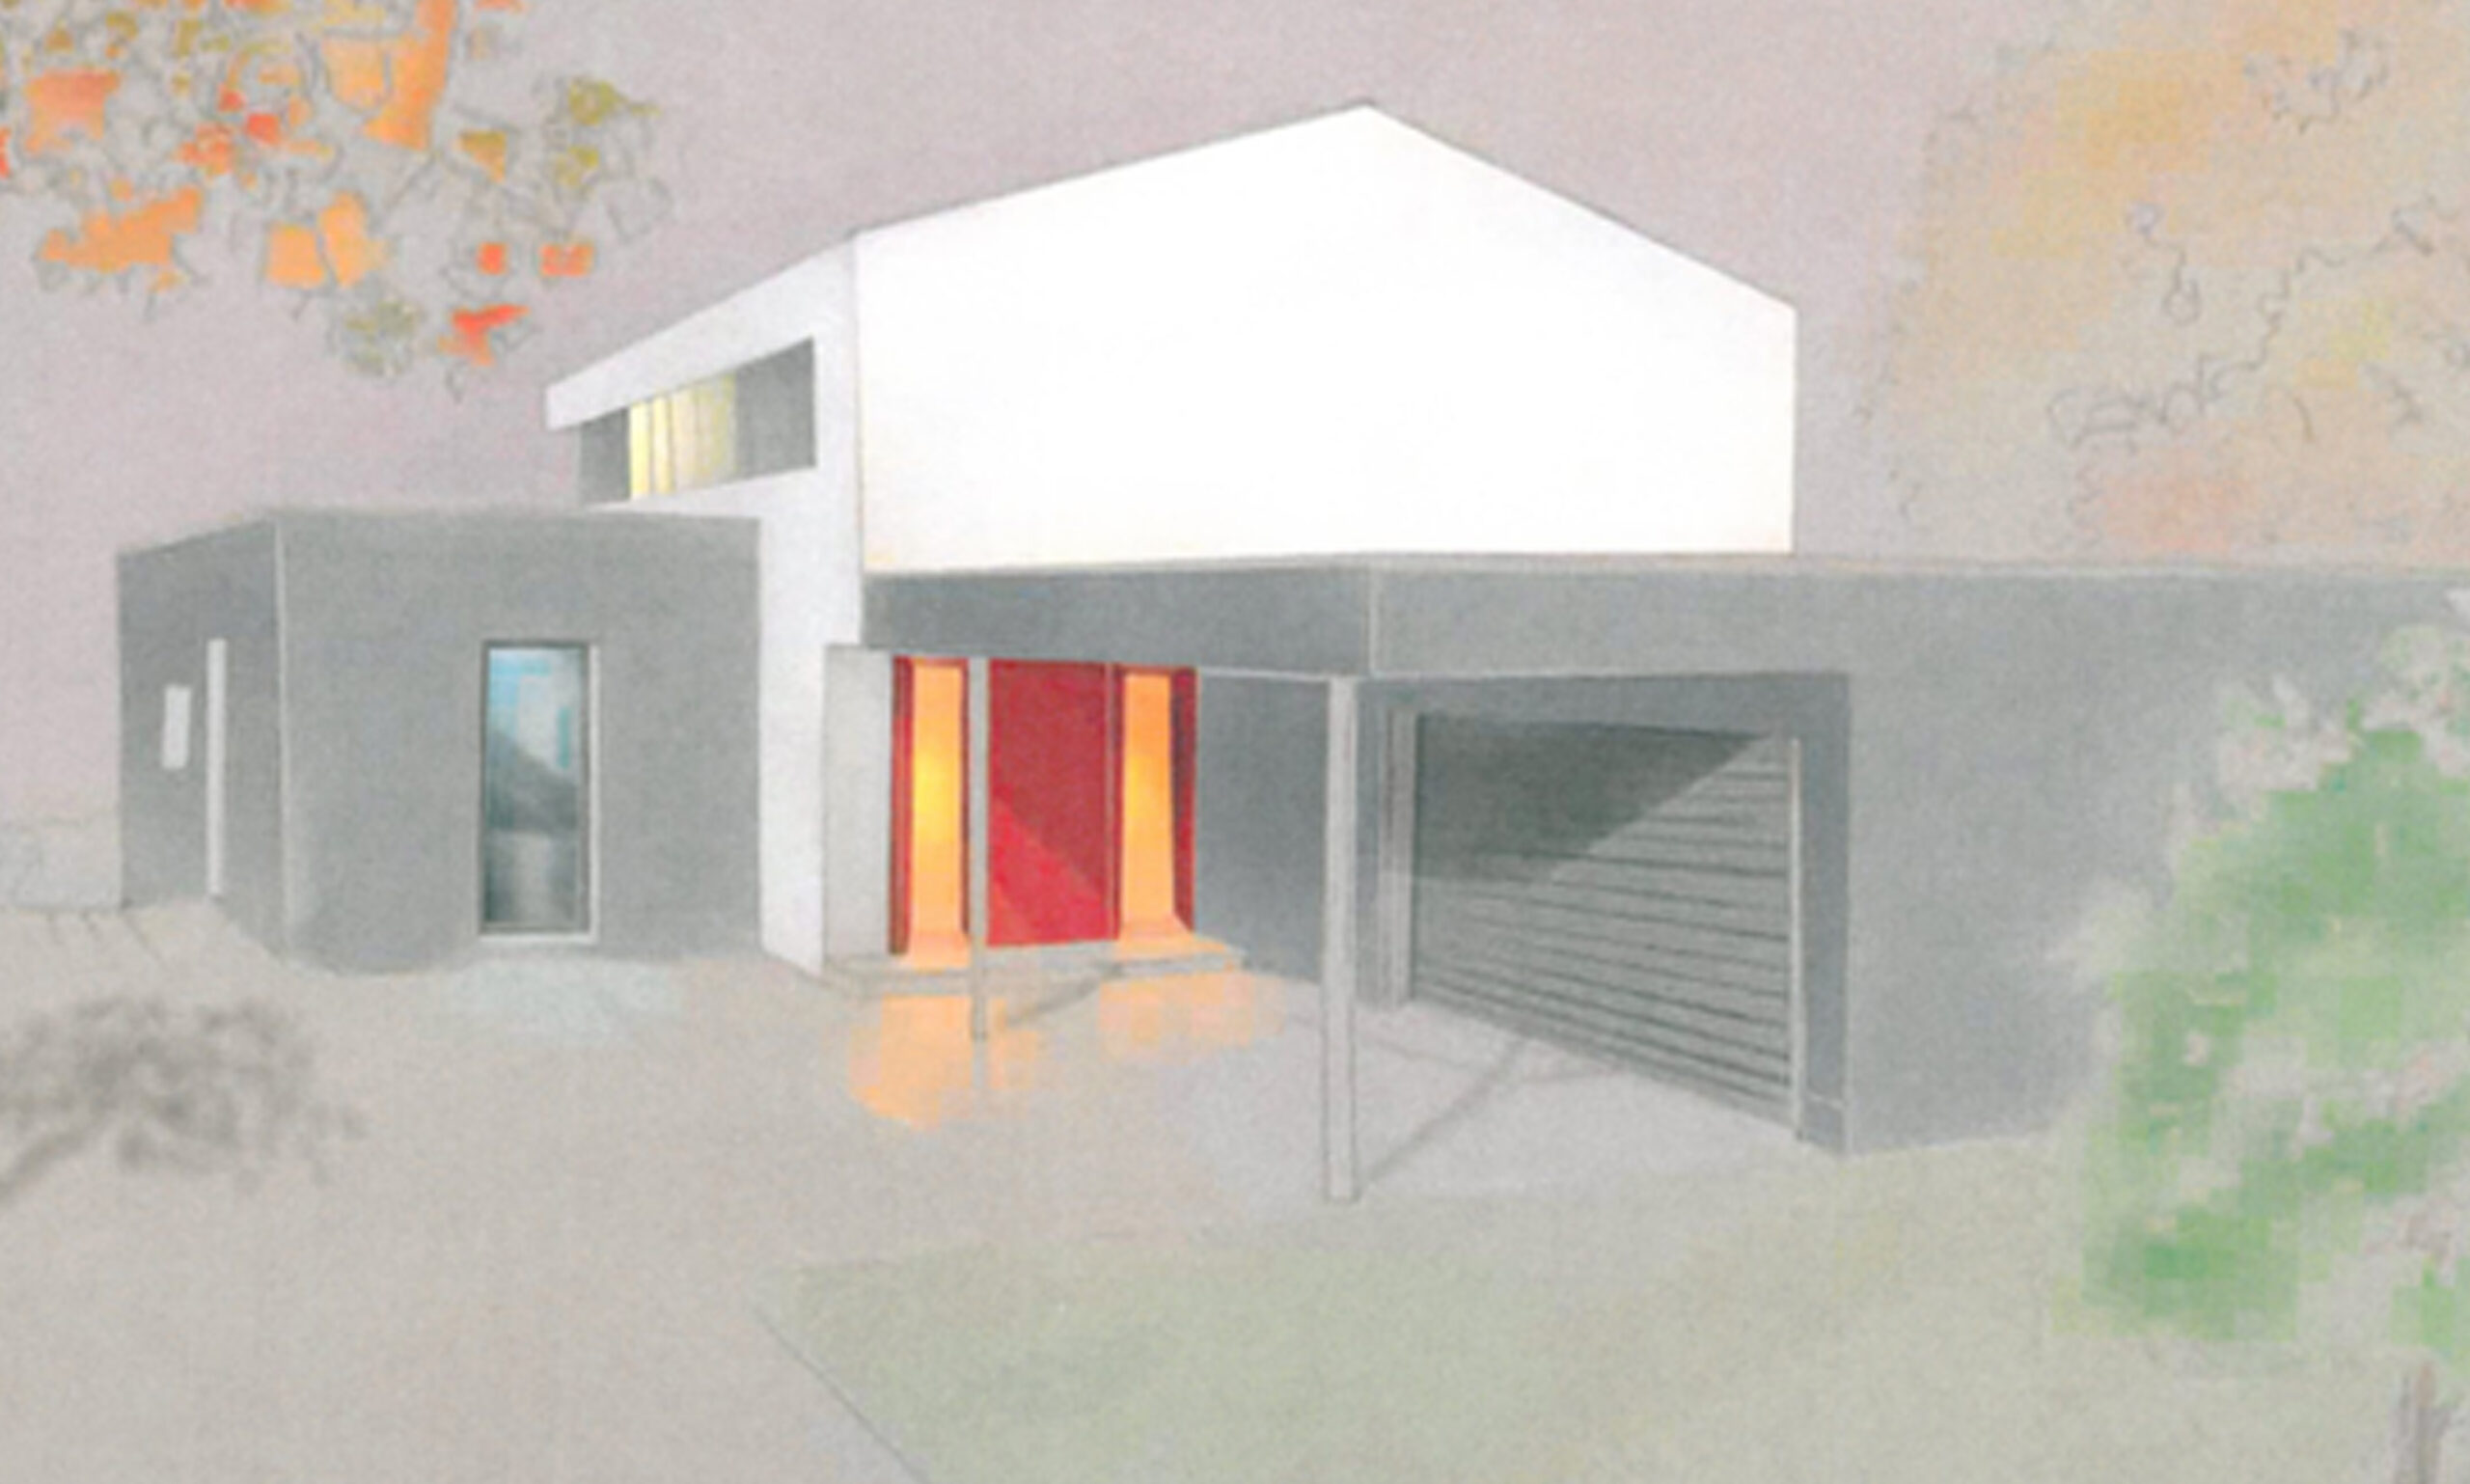 Privatgebäude Einfamilienhaus - Architekt: J. Guthann / Tusche, Kreide, Photoshop